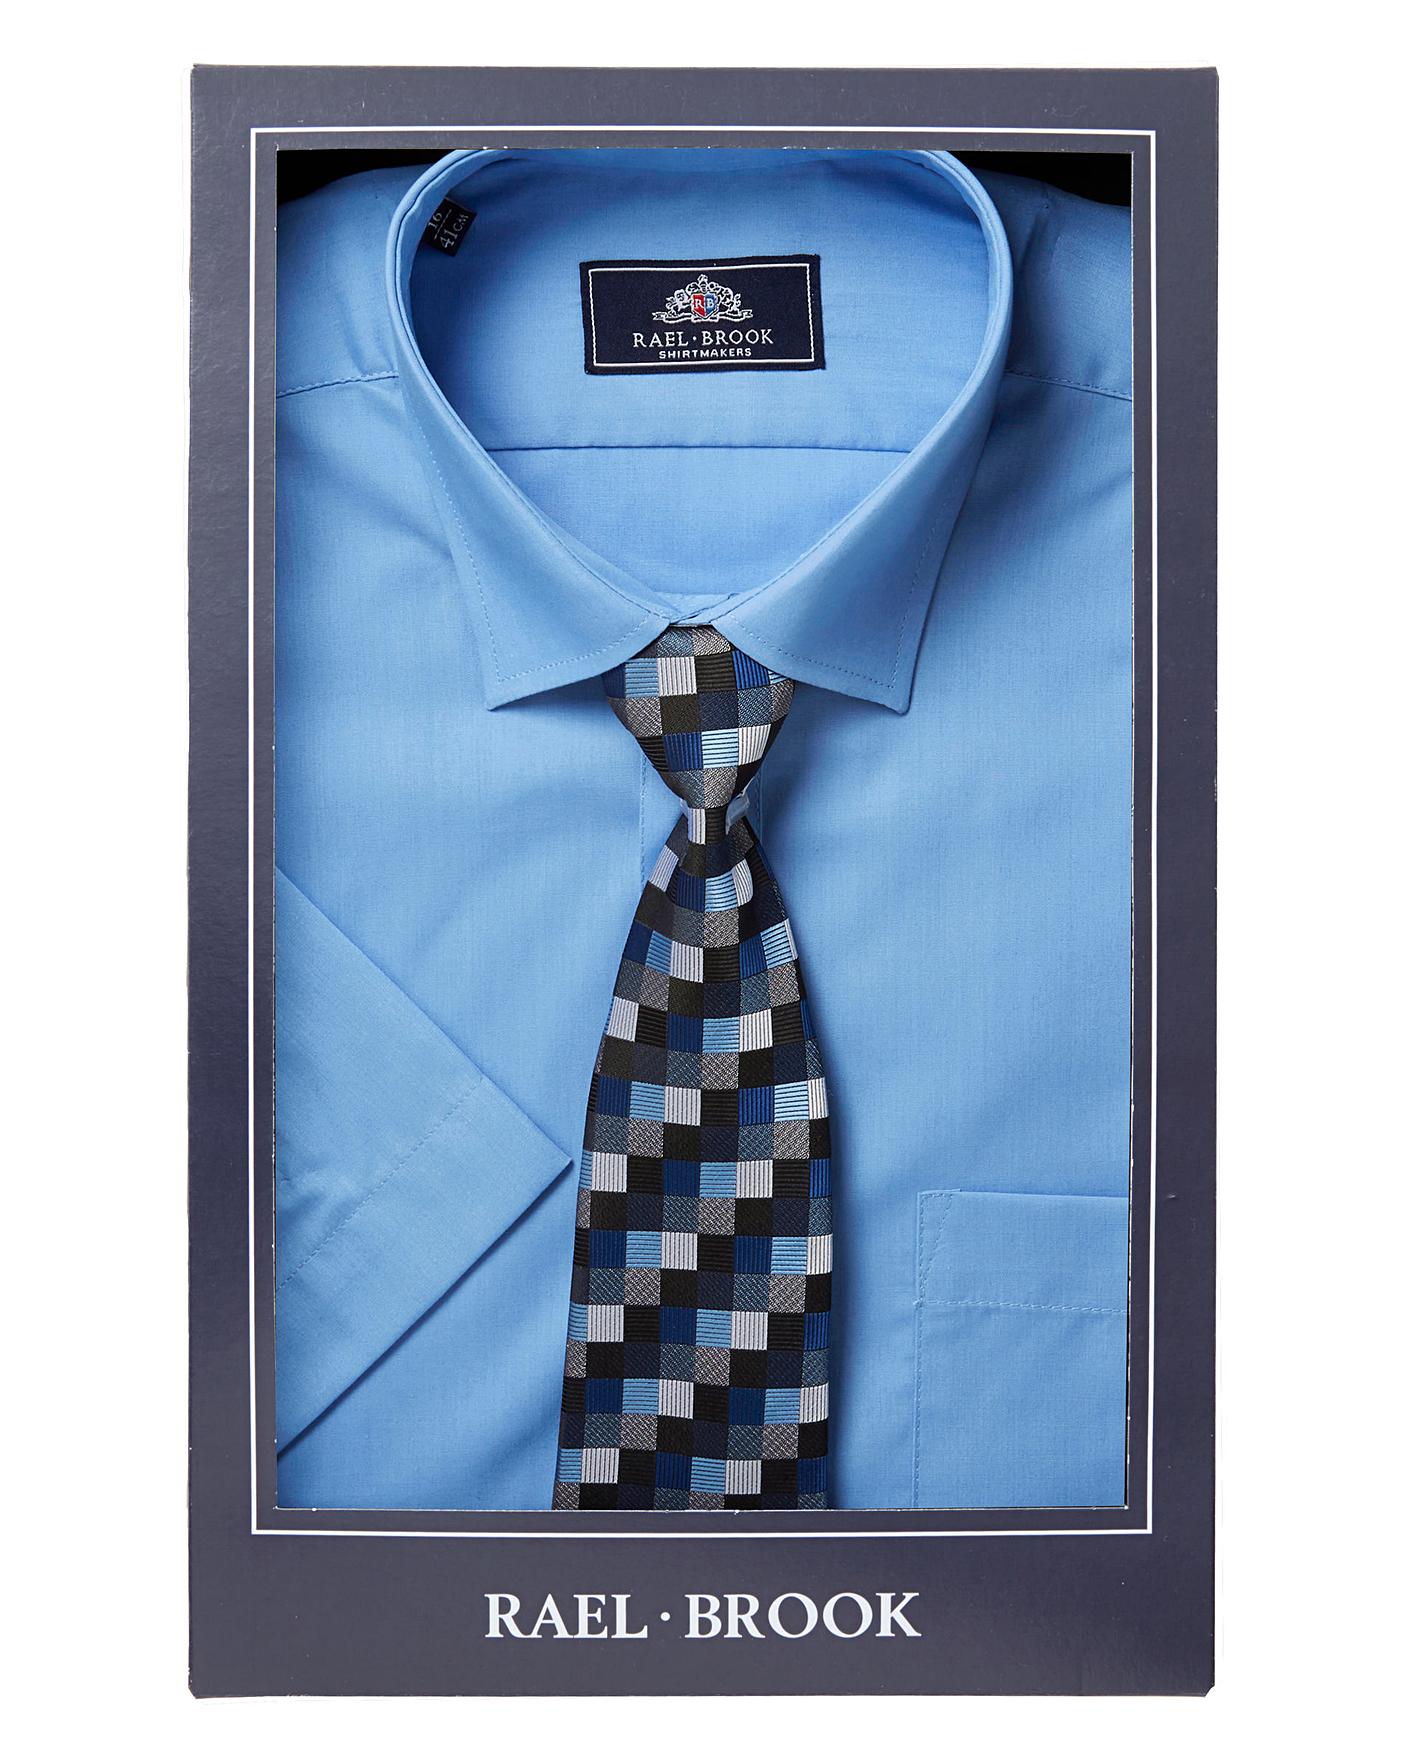 rael brook shirt and tie sets